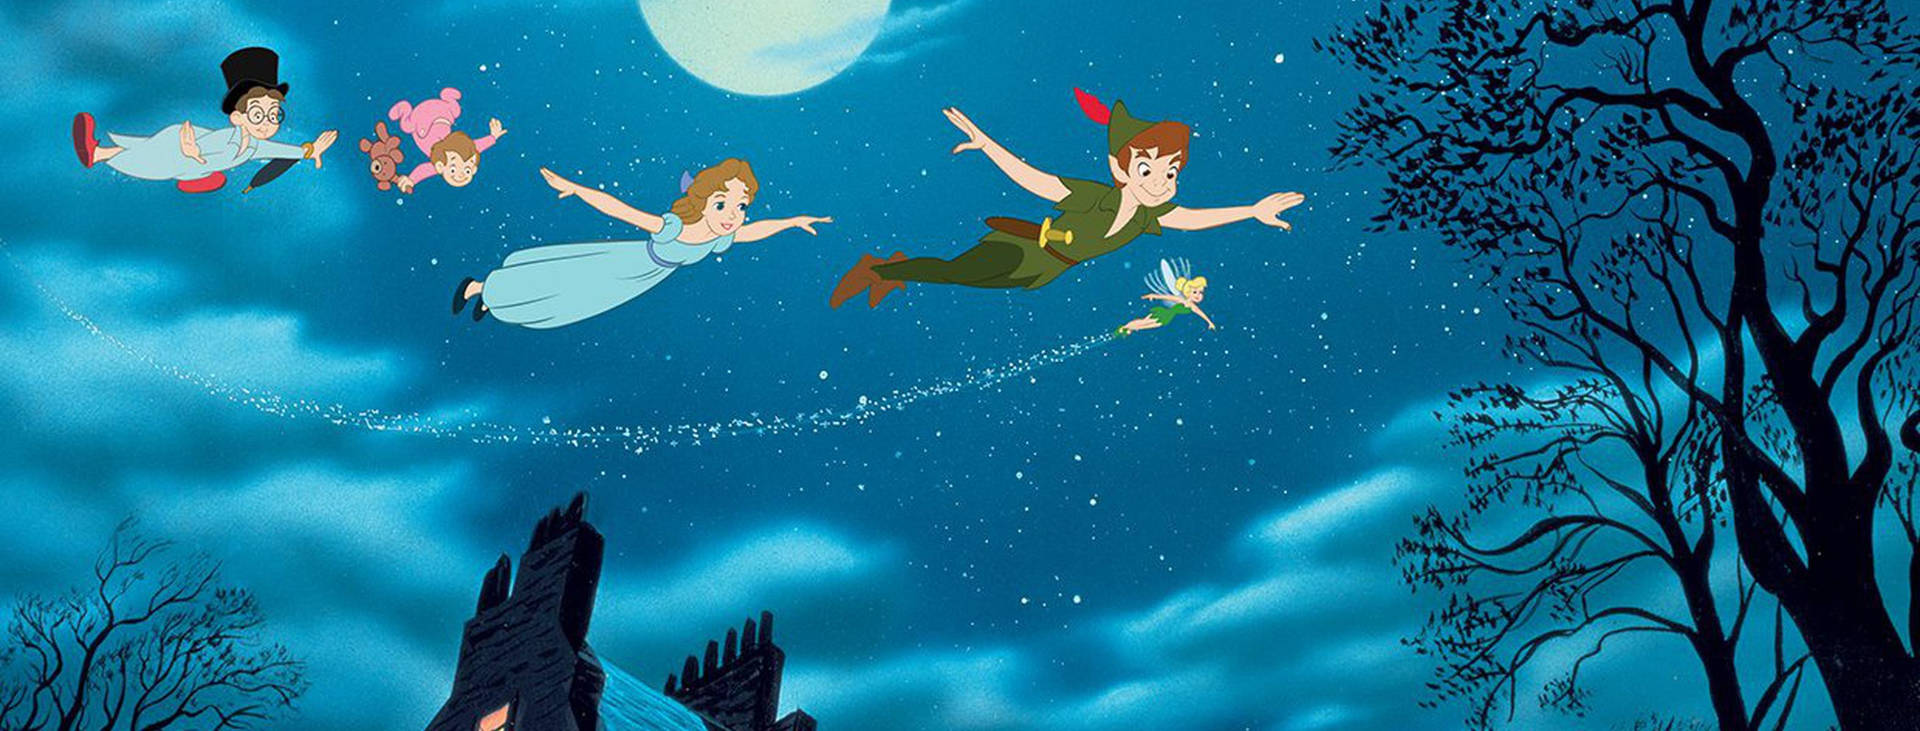 Peter Pan and Tinker Bell Wallpaper  Disneyclipscom